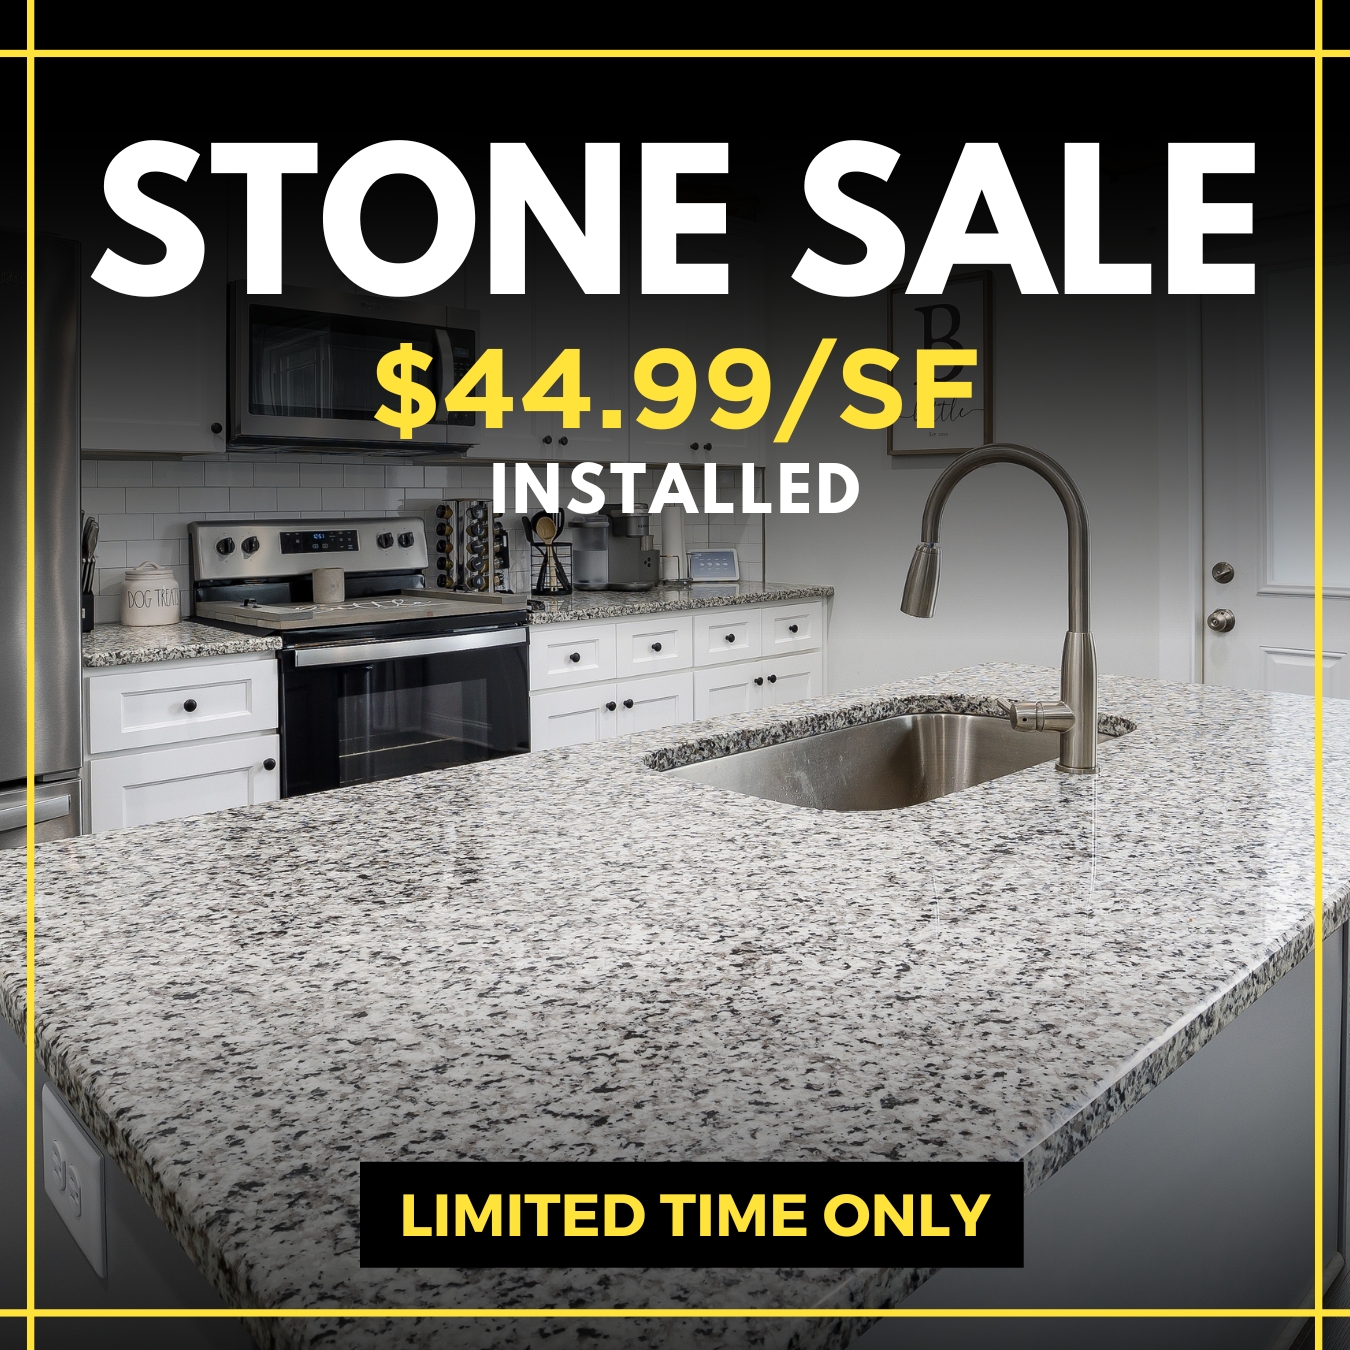 Tri-Cities - Square - $44.99 Stone Sale